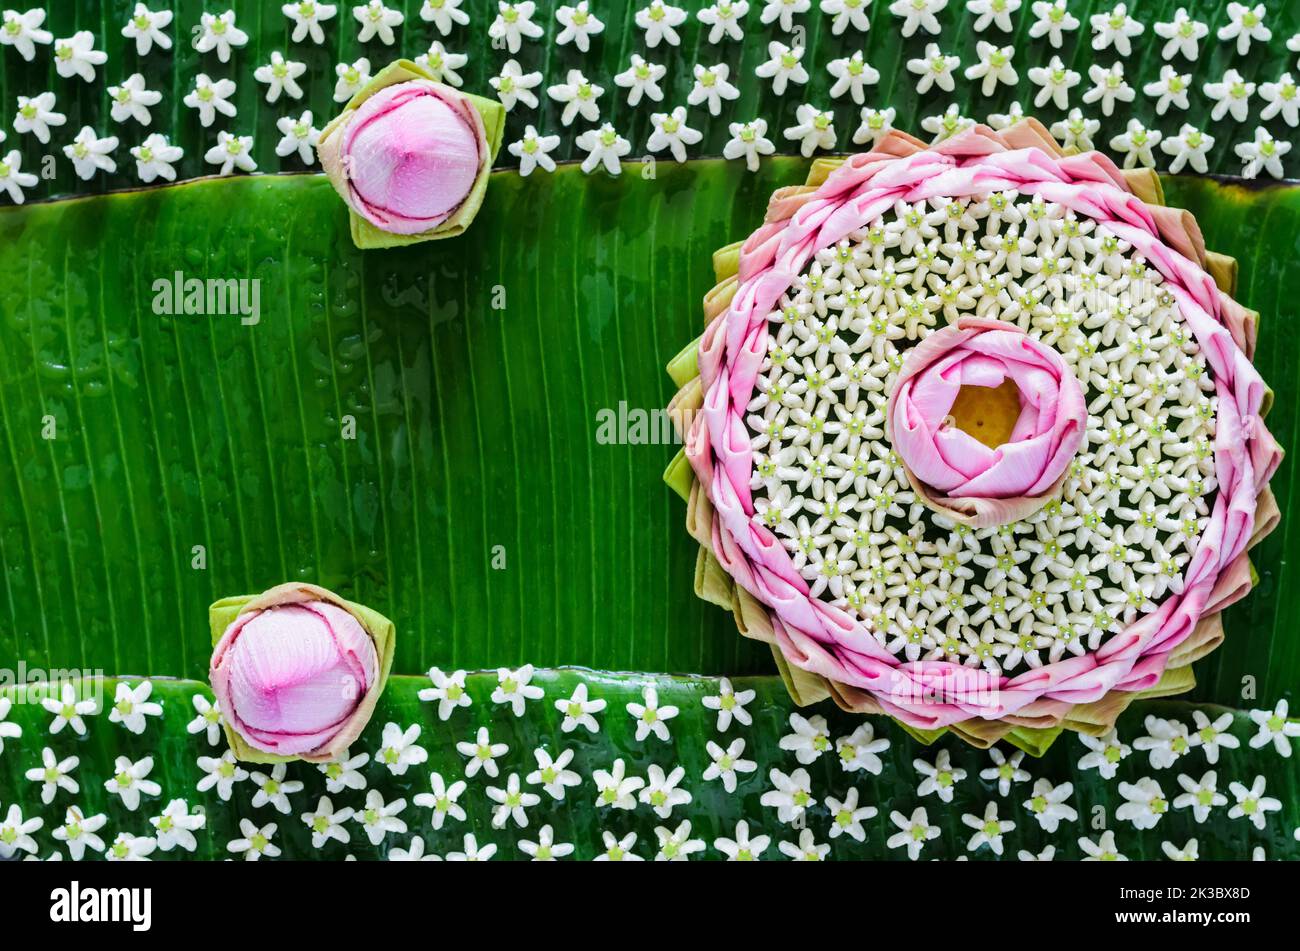 Rosa petalo di loto krathong decora con il suo fiore, fiore corona per la Thailandia Full moon o Loy Krathong festival su sfondo foglie di banana. Foto Stock